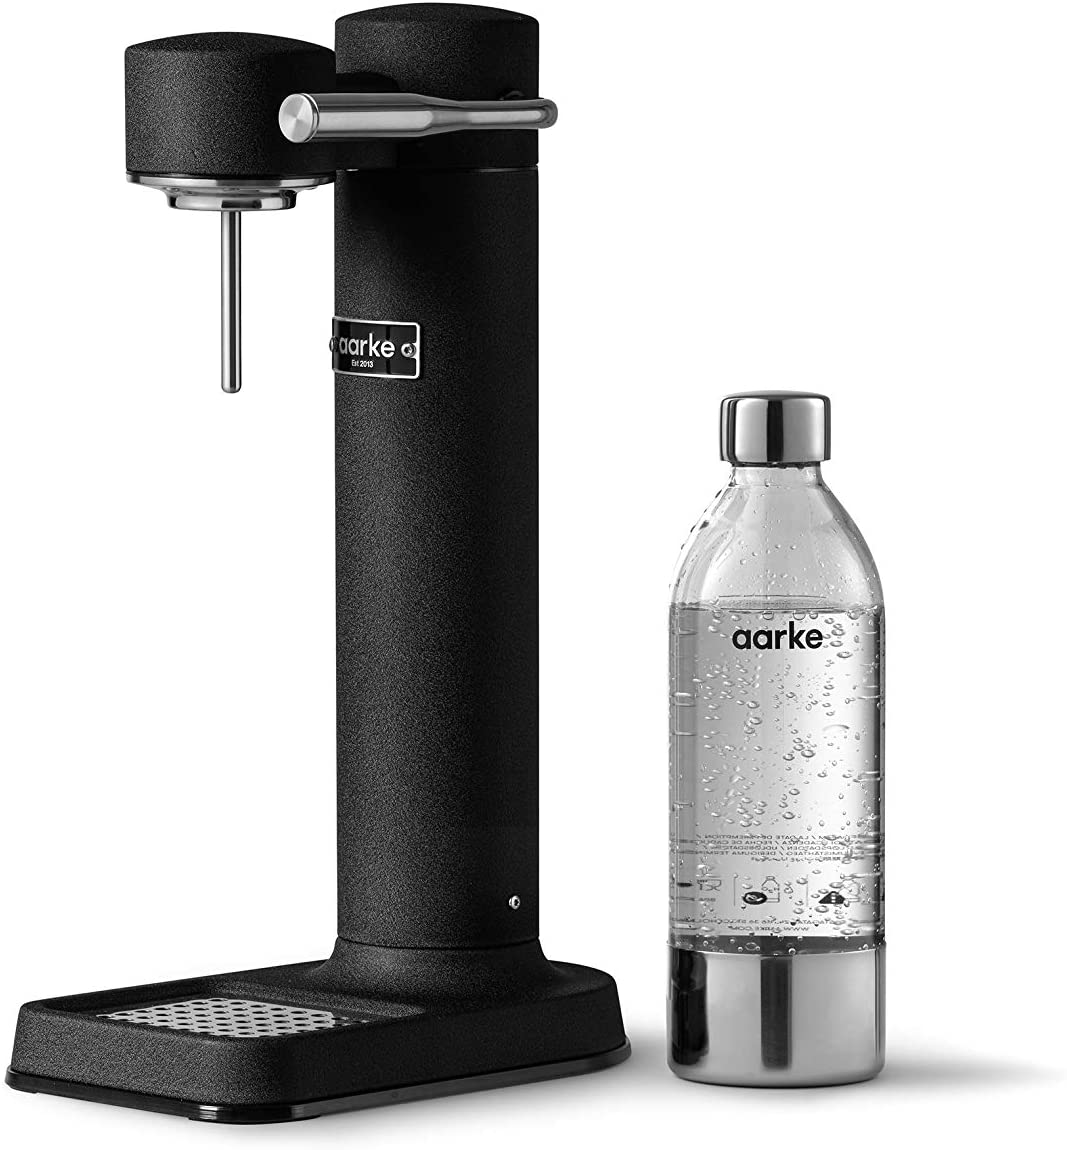 Bild zu Wassersprudler Aarke Carbonator 3 mit Edelstahlgehäuse schwarz für 124,99€ (Vergleich: 179,99€)